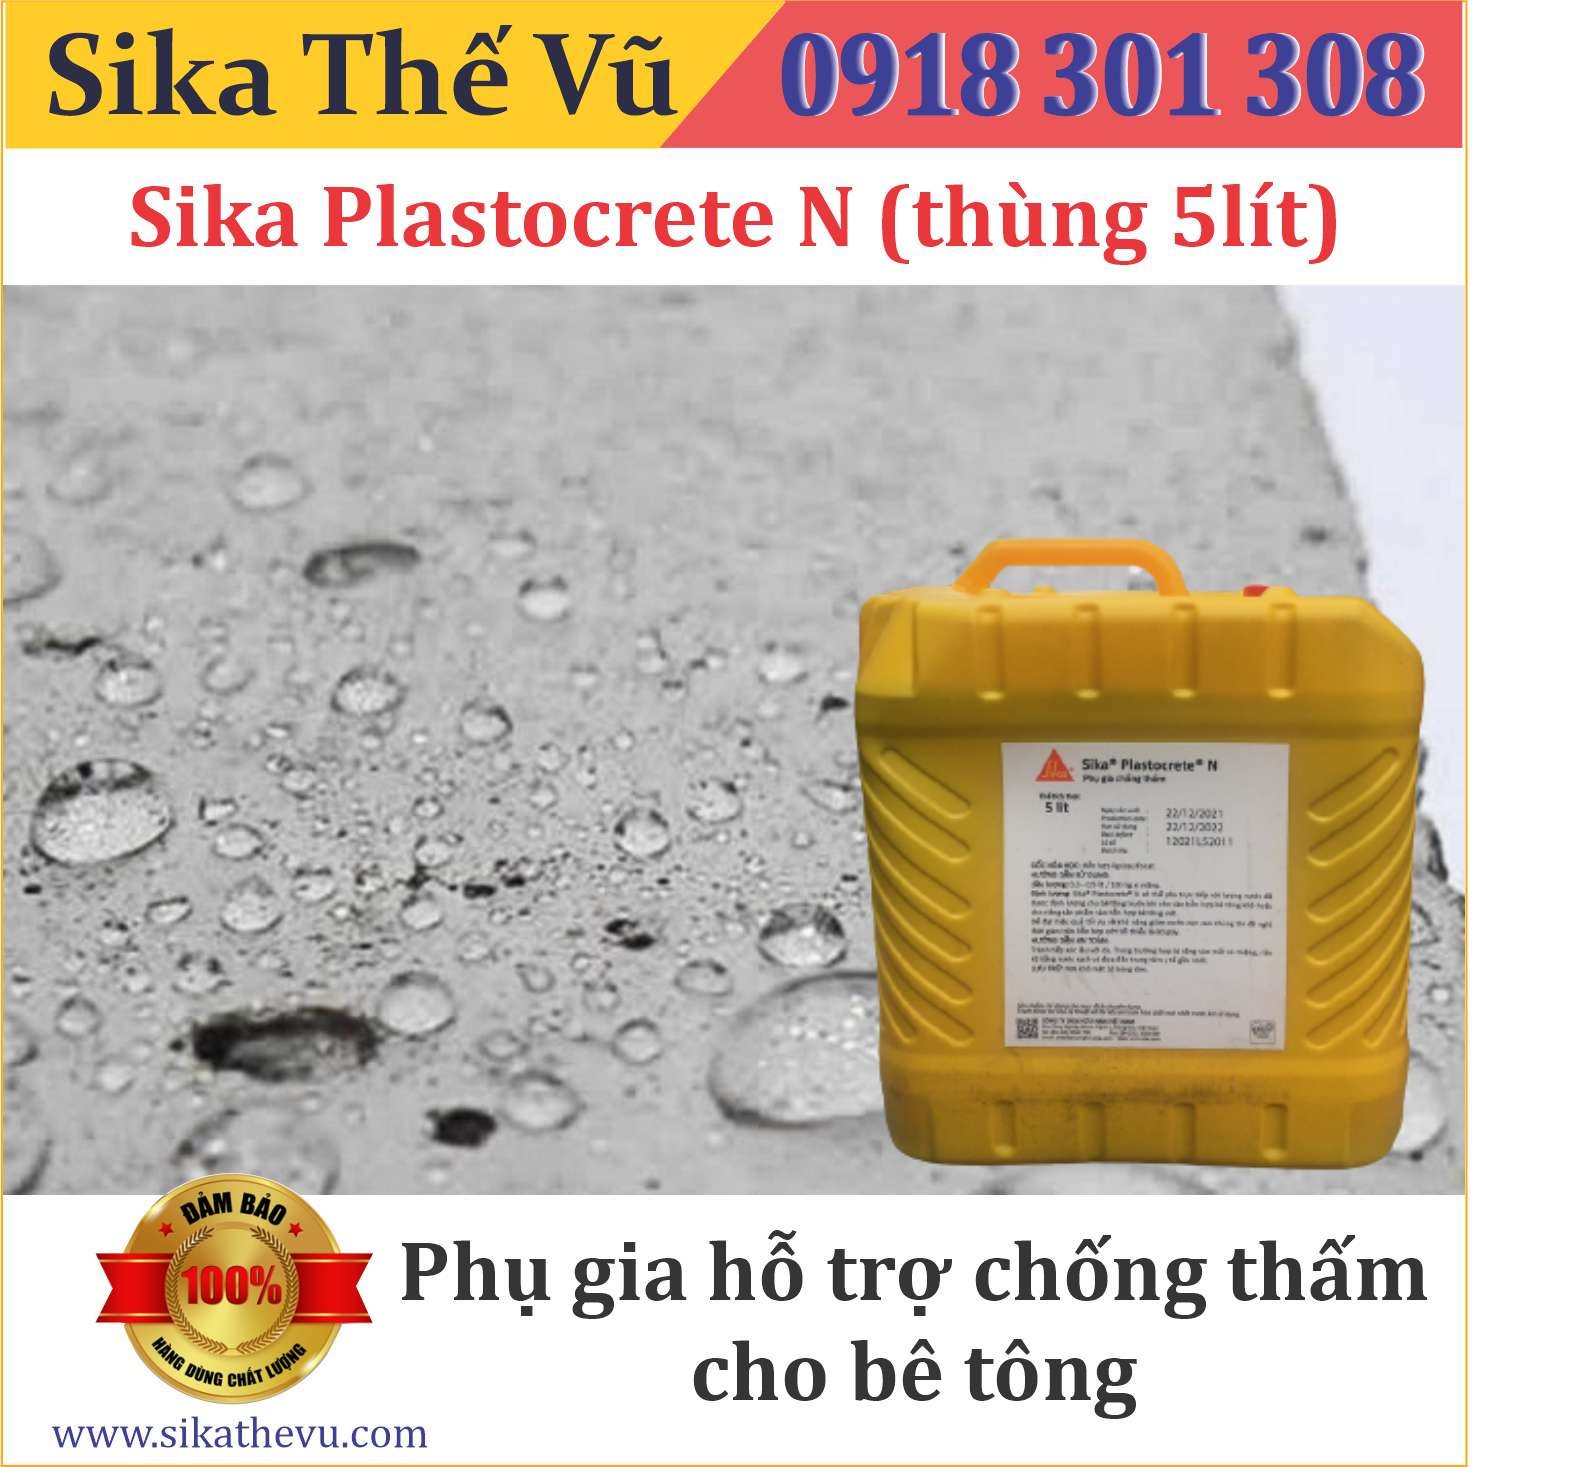 Phụ gia hỗ trợ chống thấm cho bê tông - Sika Plastocrete N (thùng 5lít)